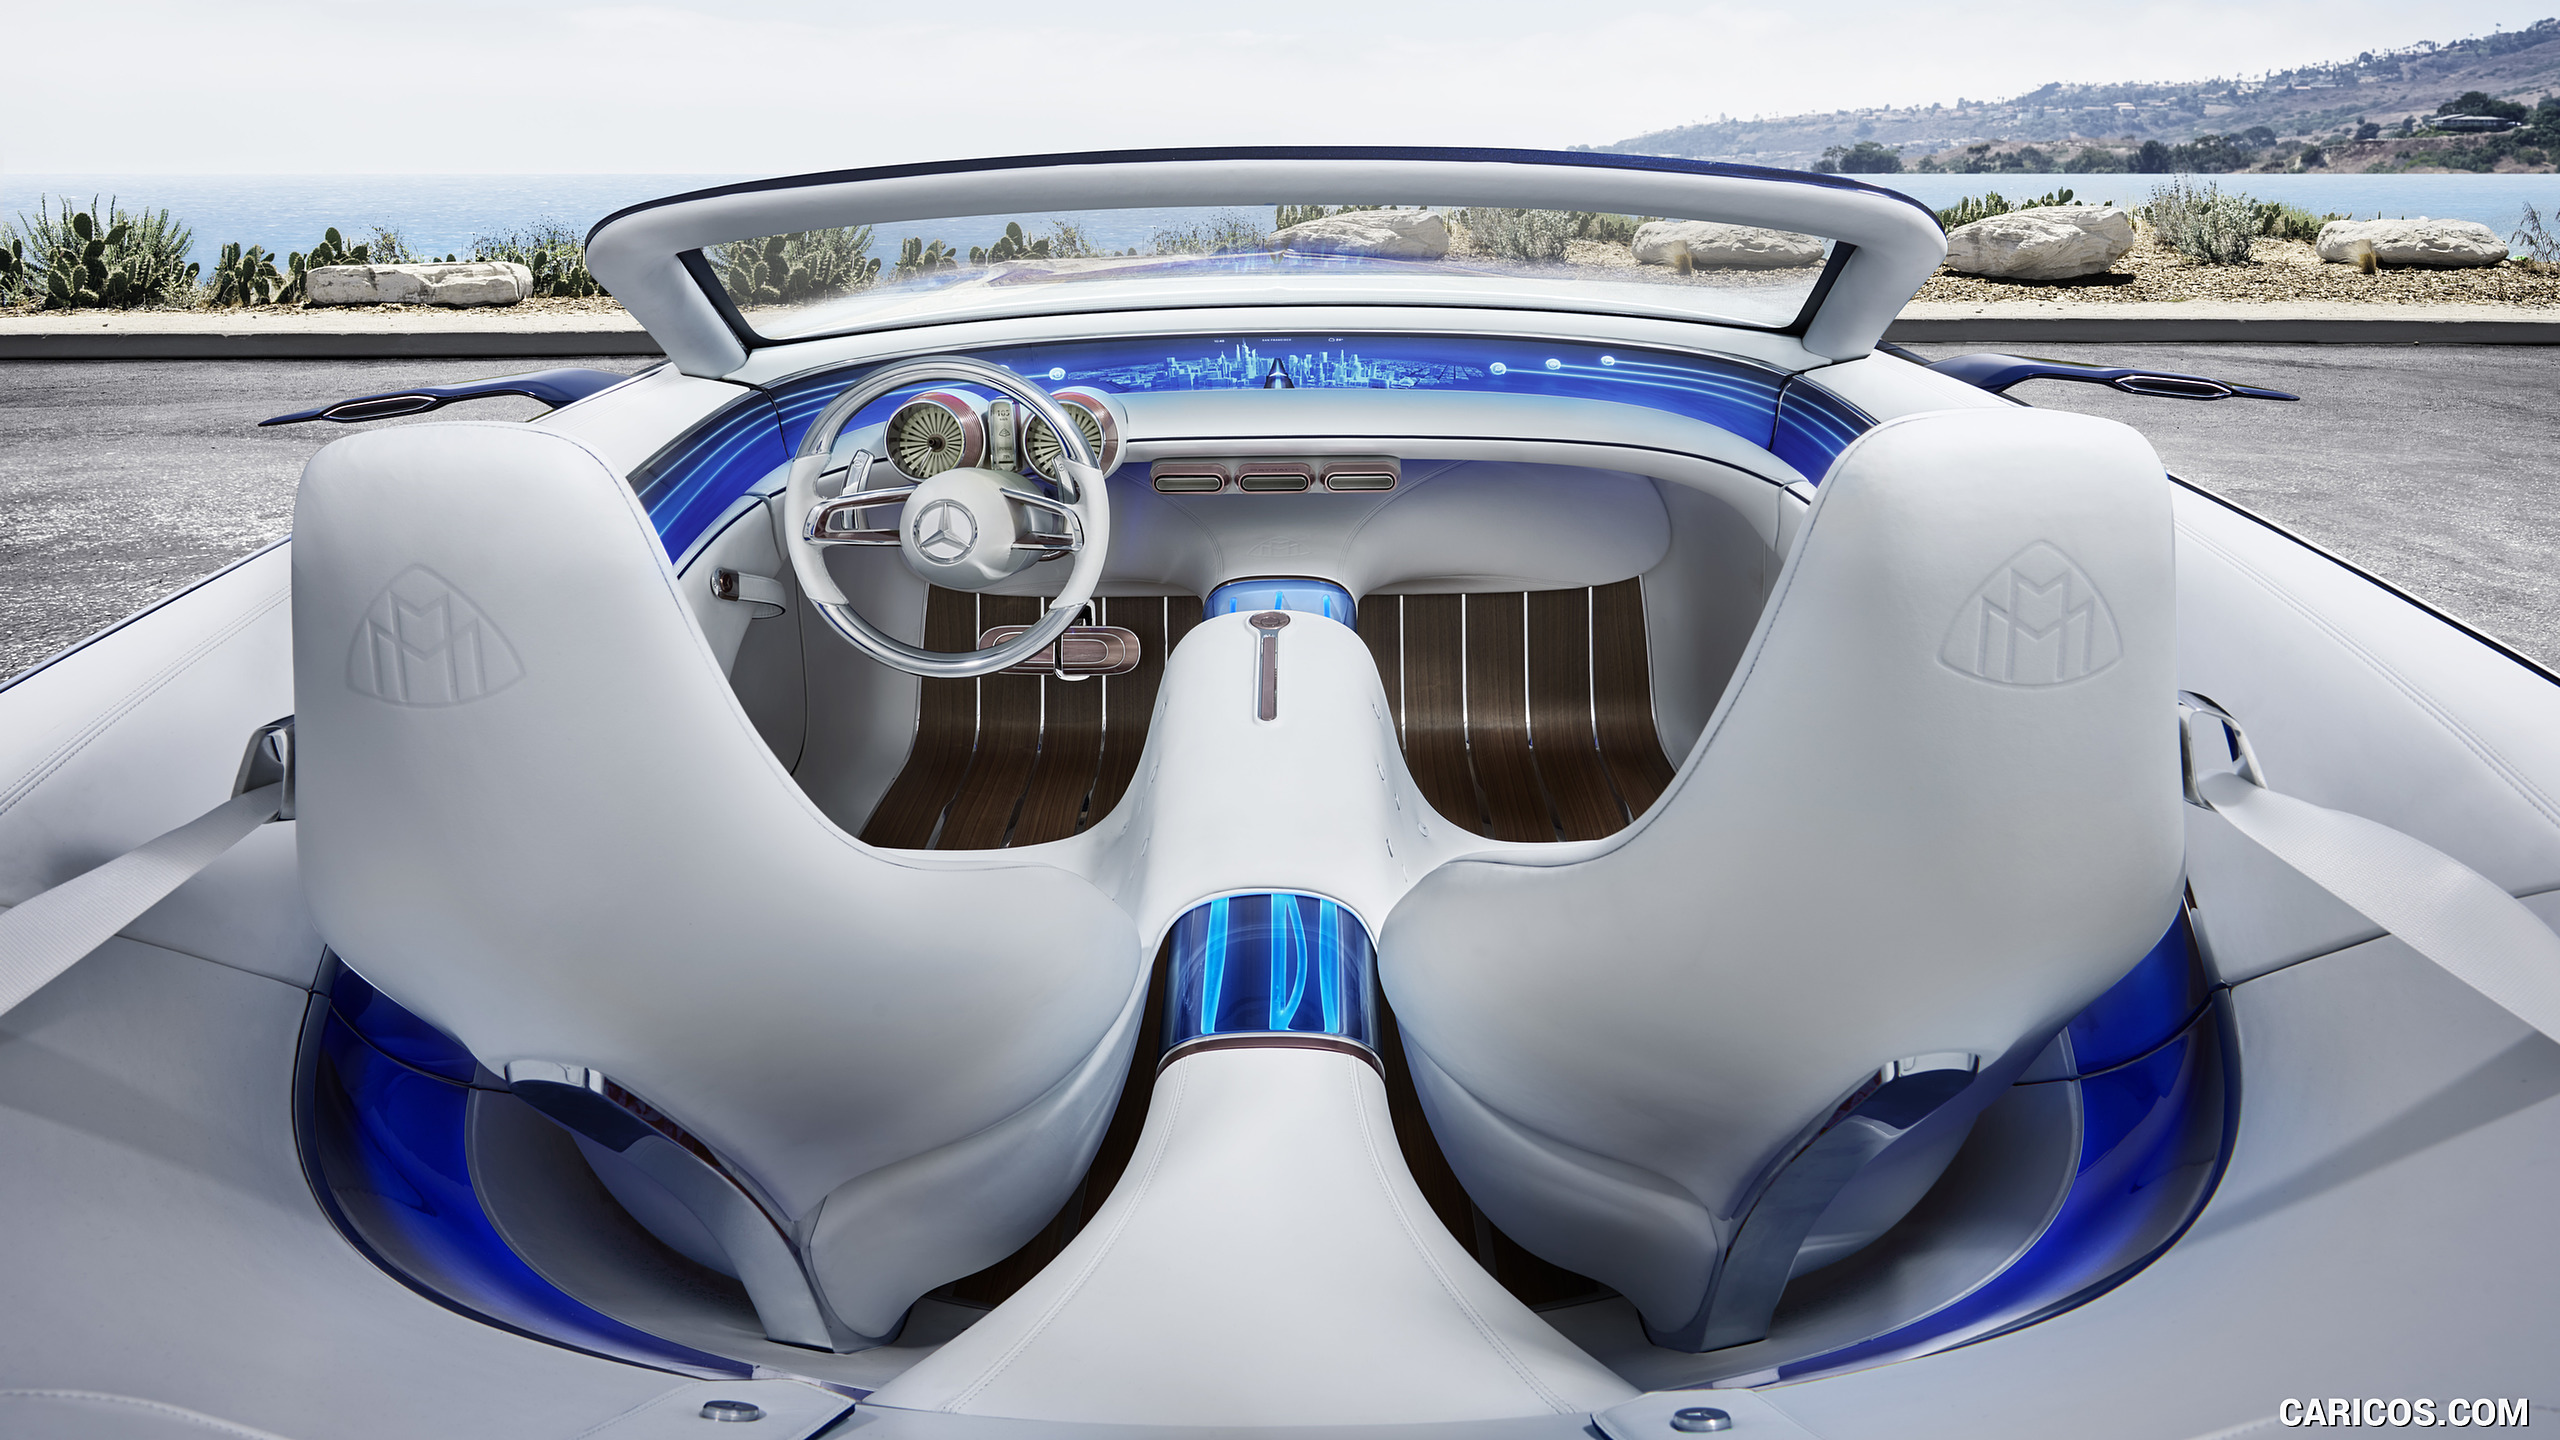 2017 Mercedes-Maybach Vision 6 Cabriolet EV Concept - Interior, #20 of 20